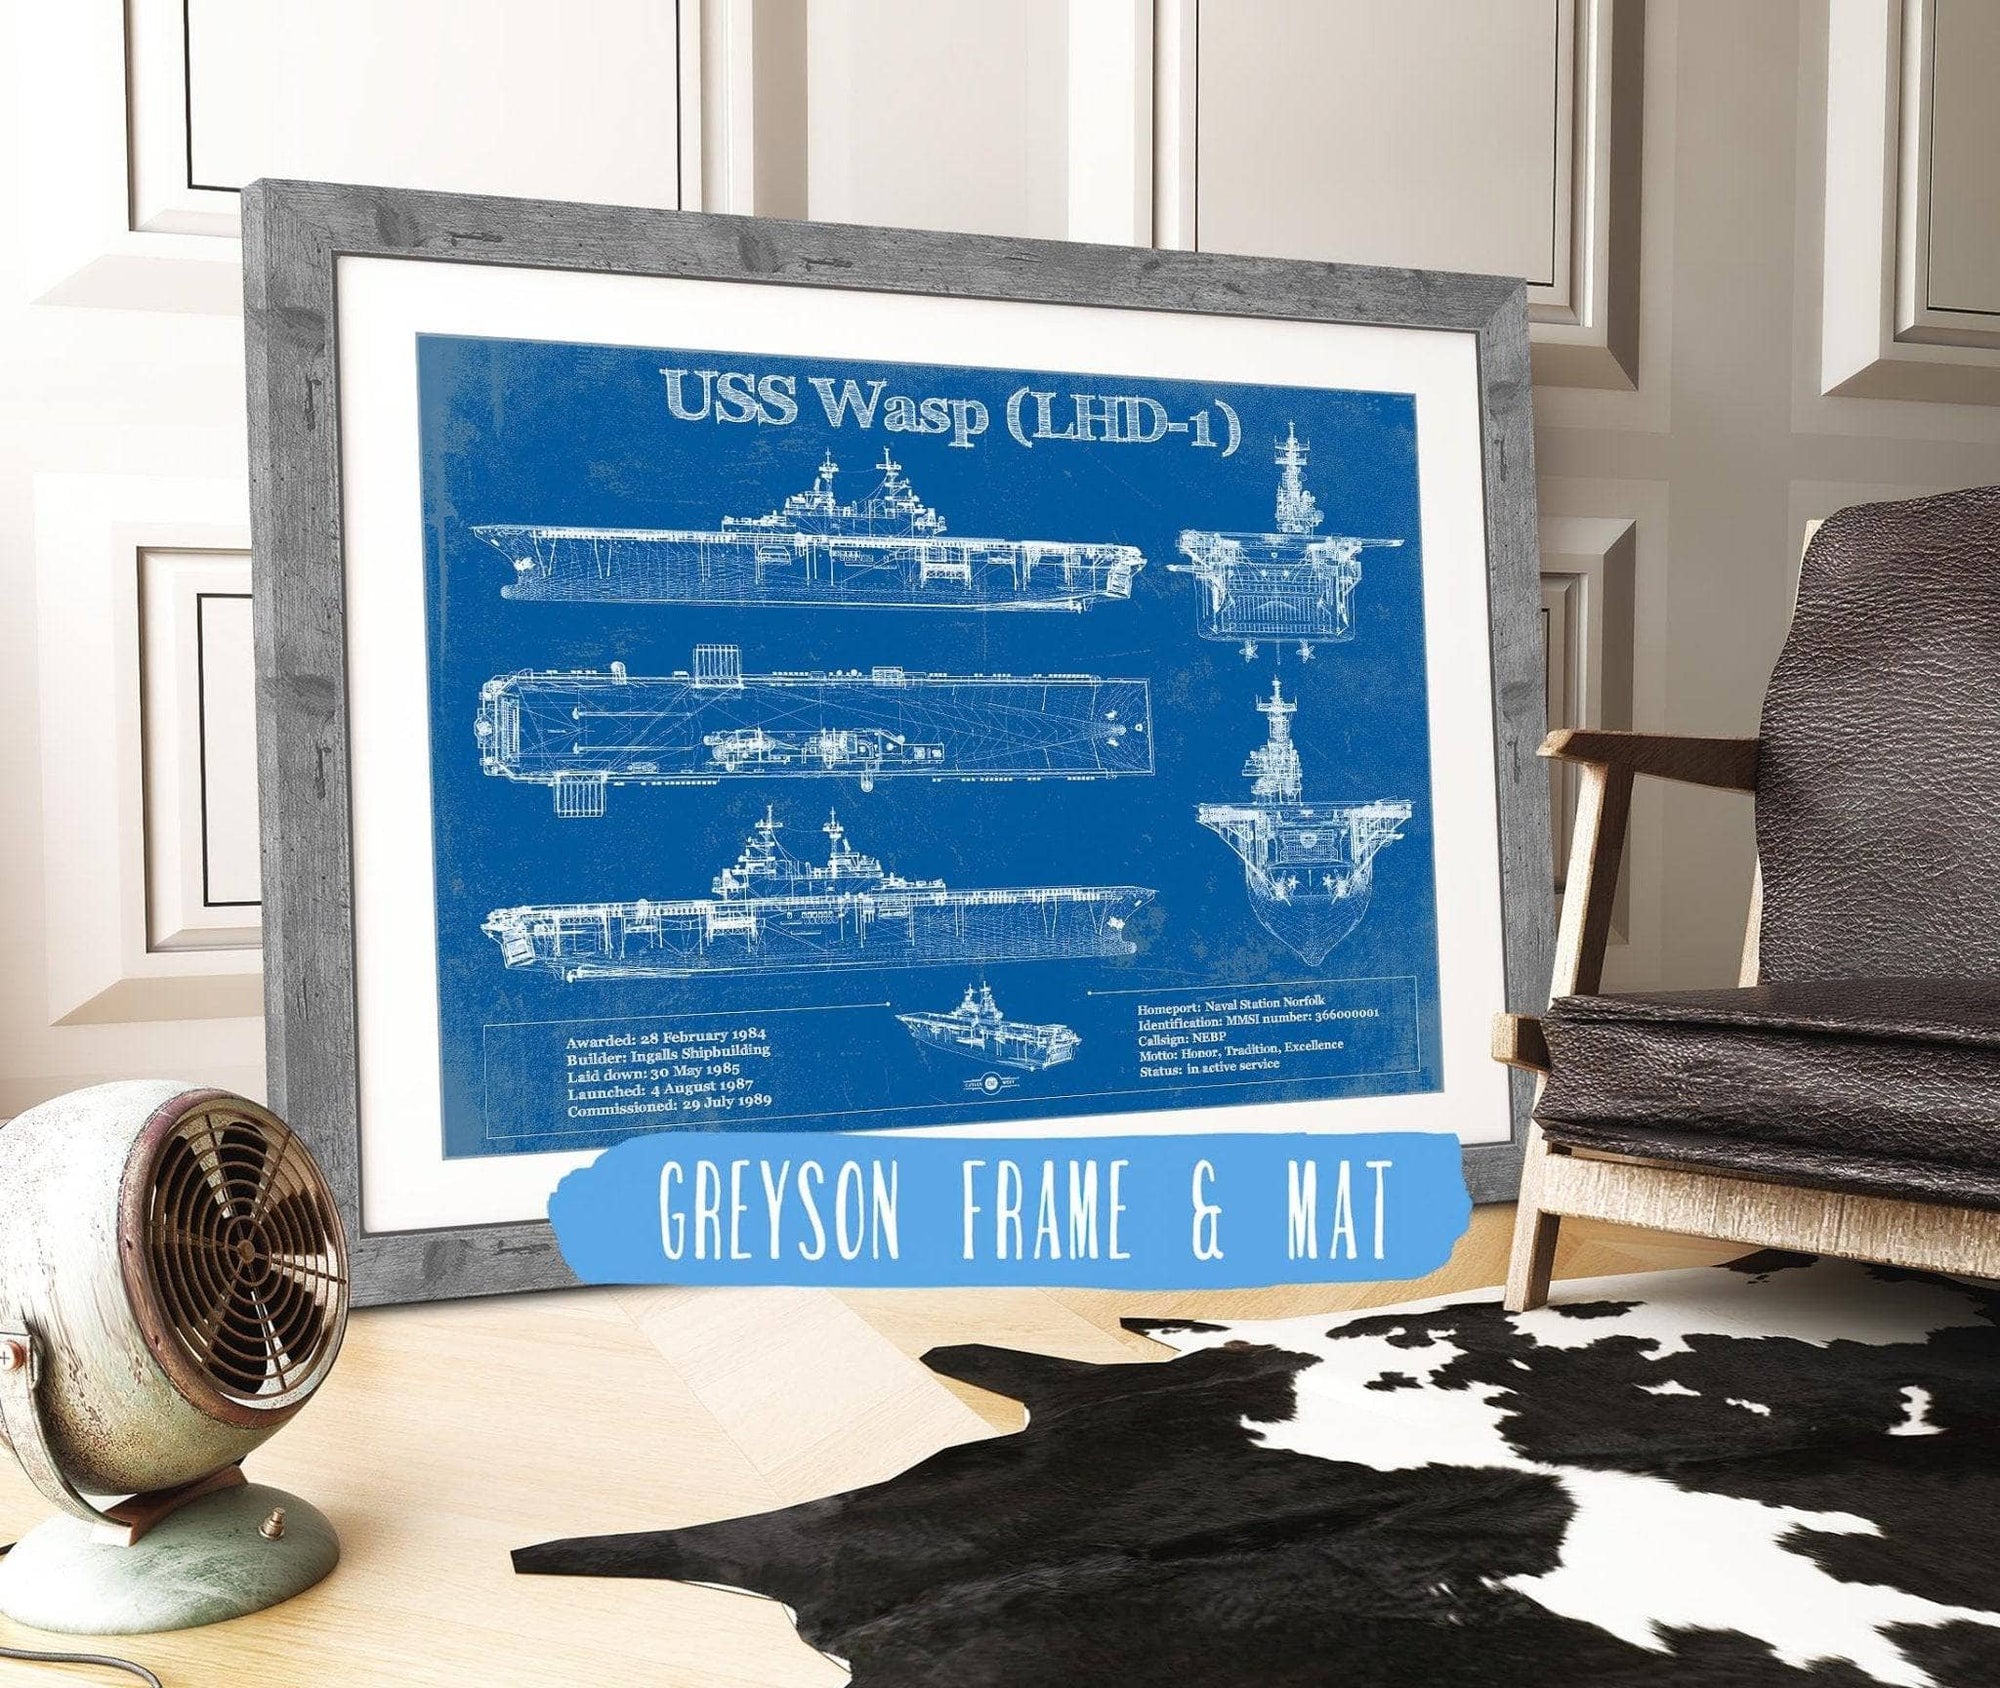 Cutler West Naval Military 14" x 11" / Greyson Frame & Mat USS Wasp (LHD-1) Aircraft Carrier Blueprint Original Military Wall Art - Customizable 933311001_27708